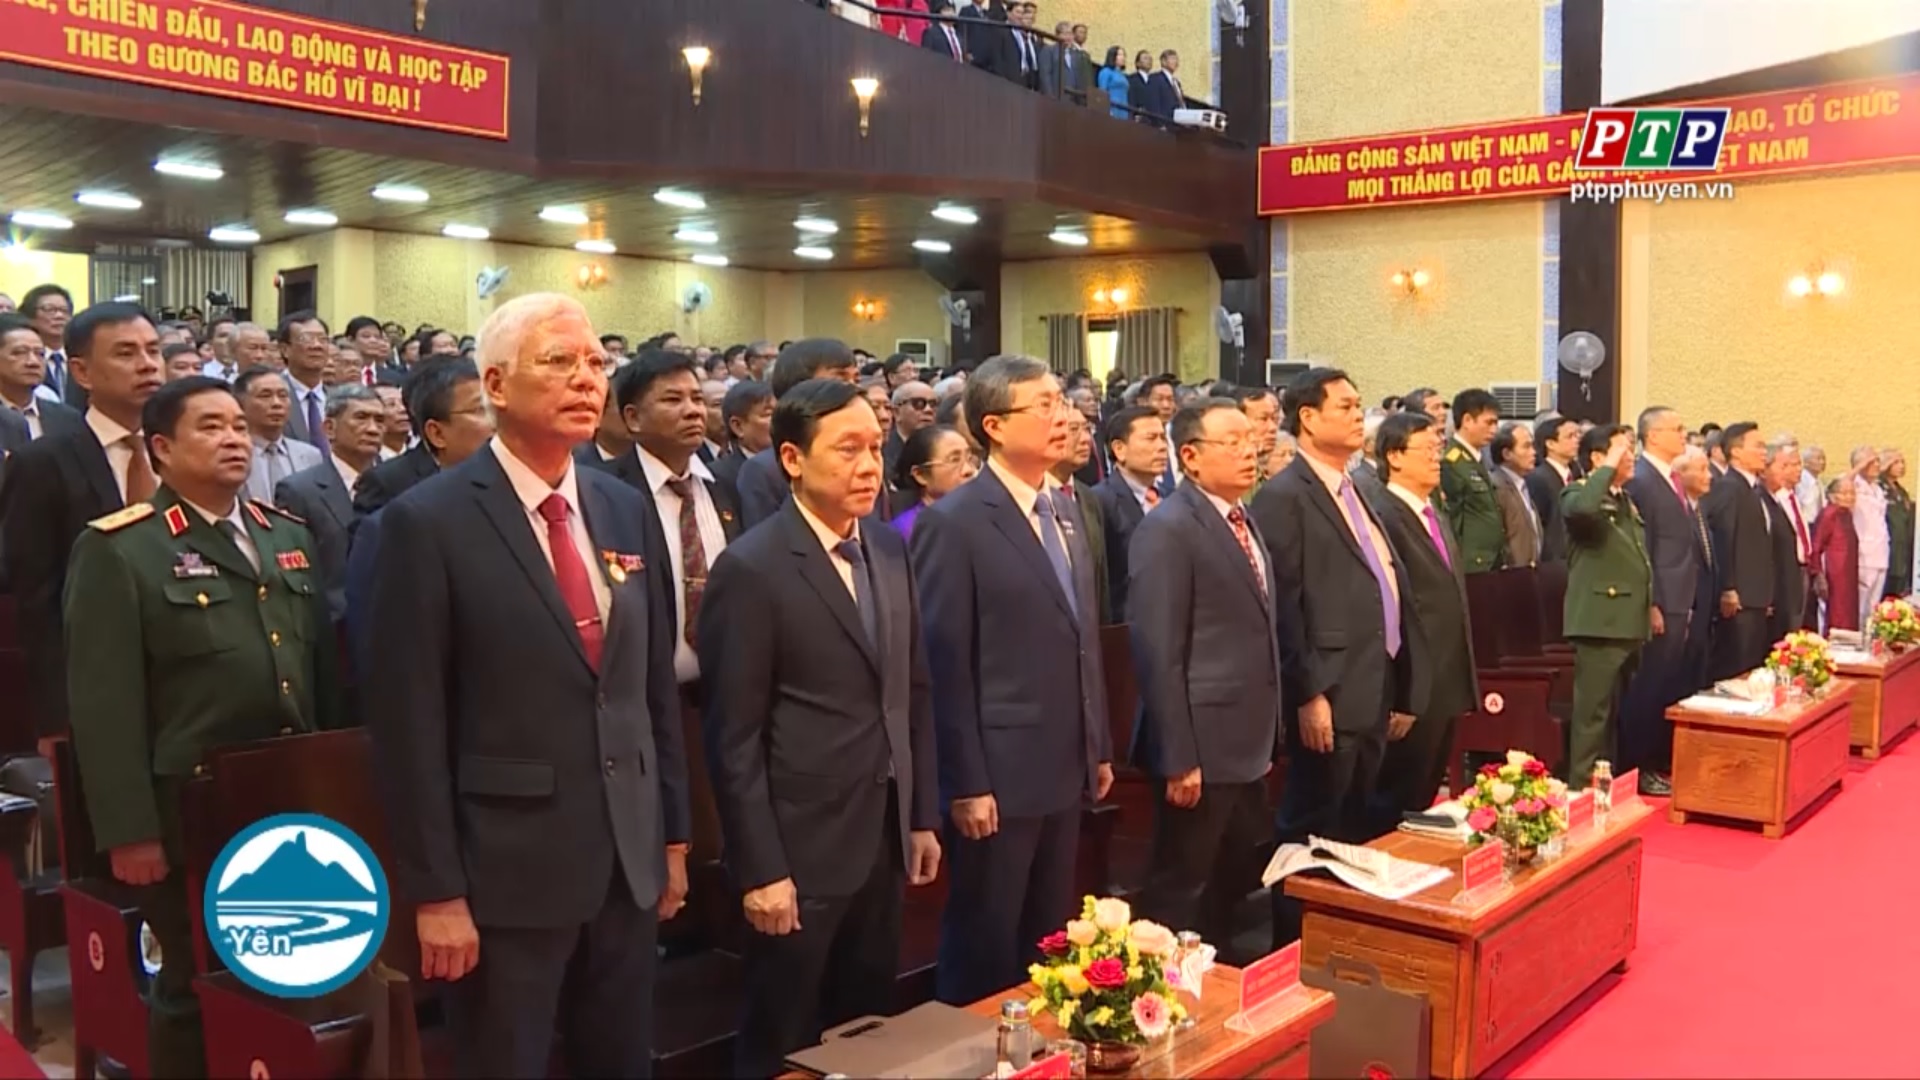 Khai mạc Đại hội đại biểu Đảng bộ tỉnh Phú Yên lần thứ XVII, nhiệm kỳ 2020-2025